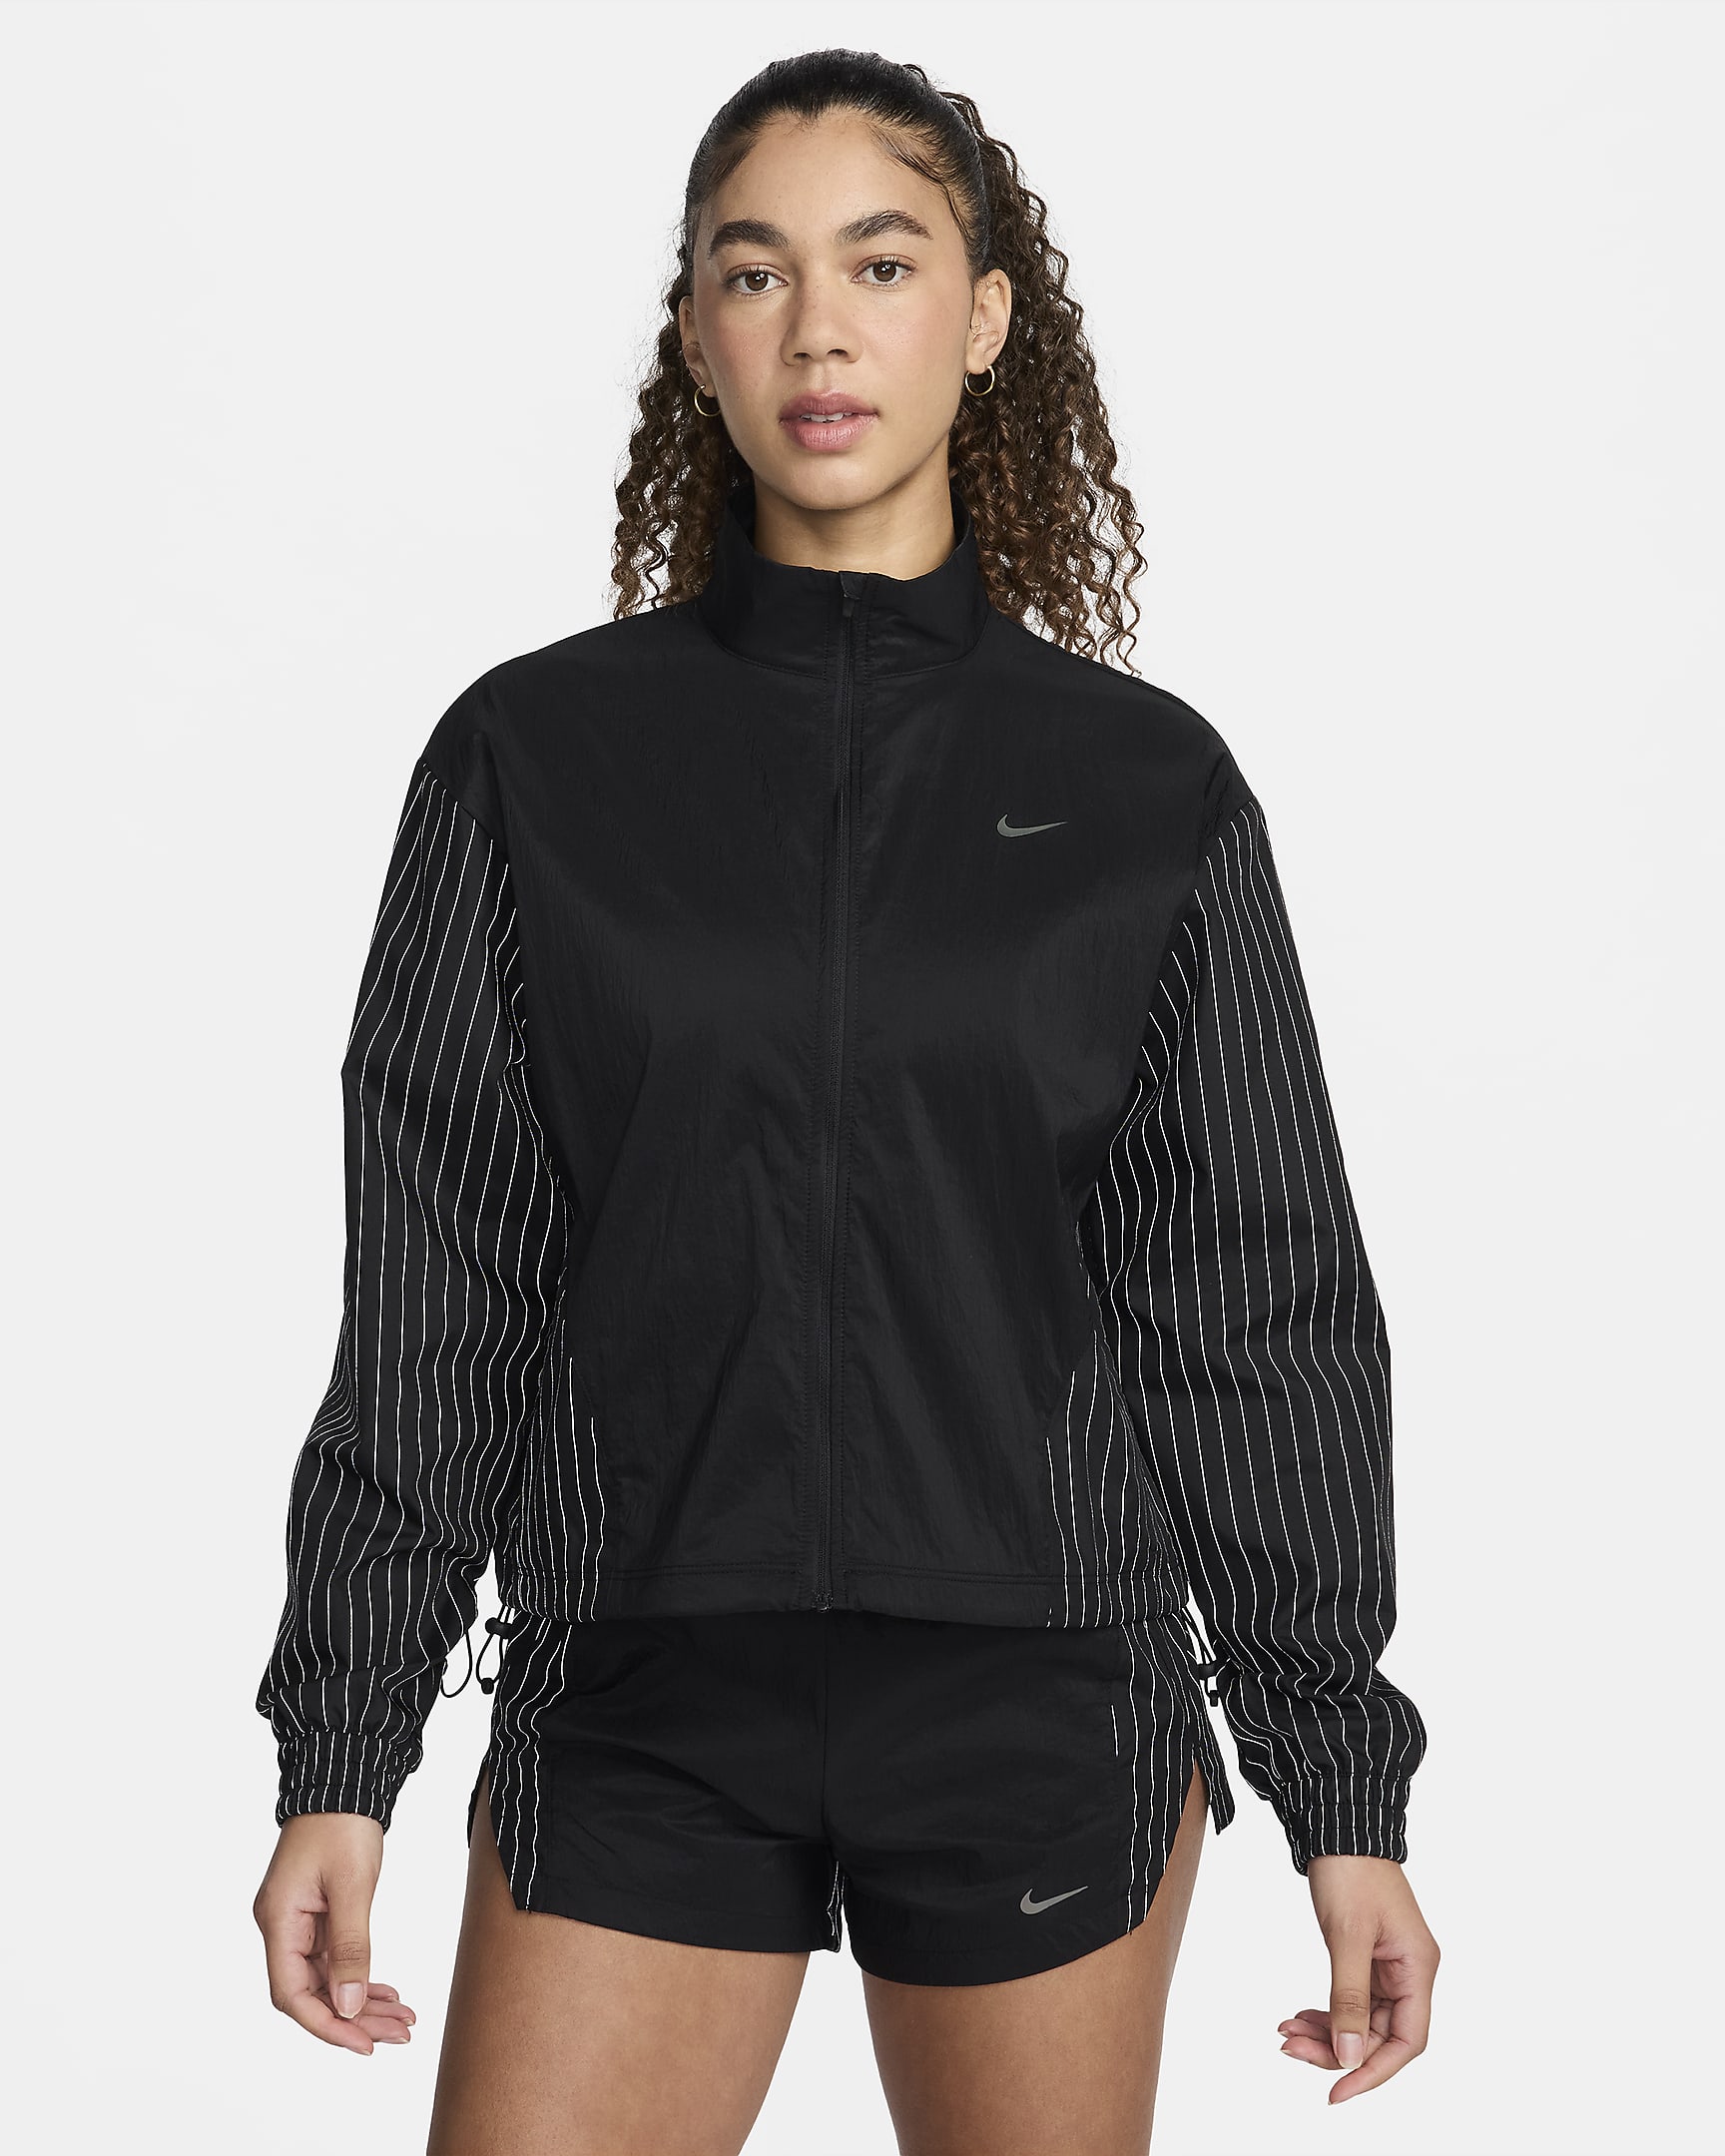 Nike Running Division Women's Running Jacket. Nike UK